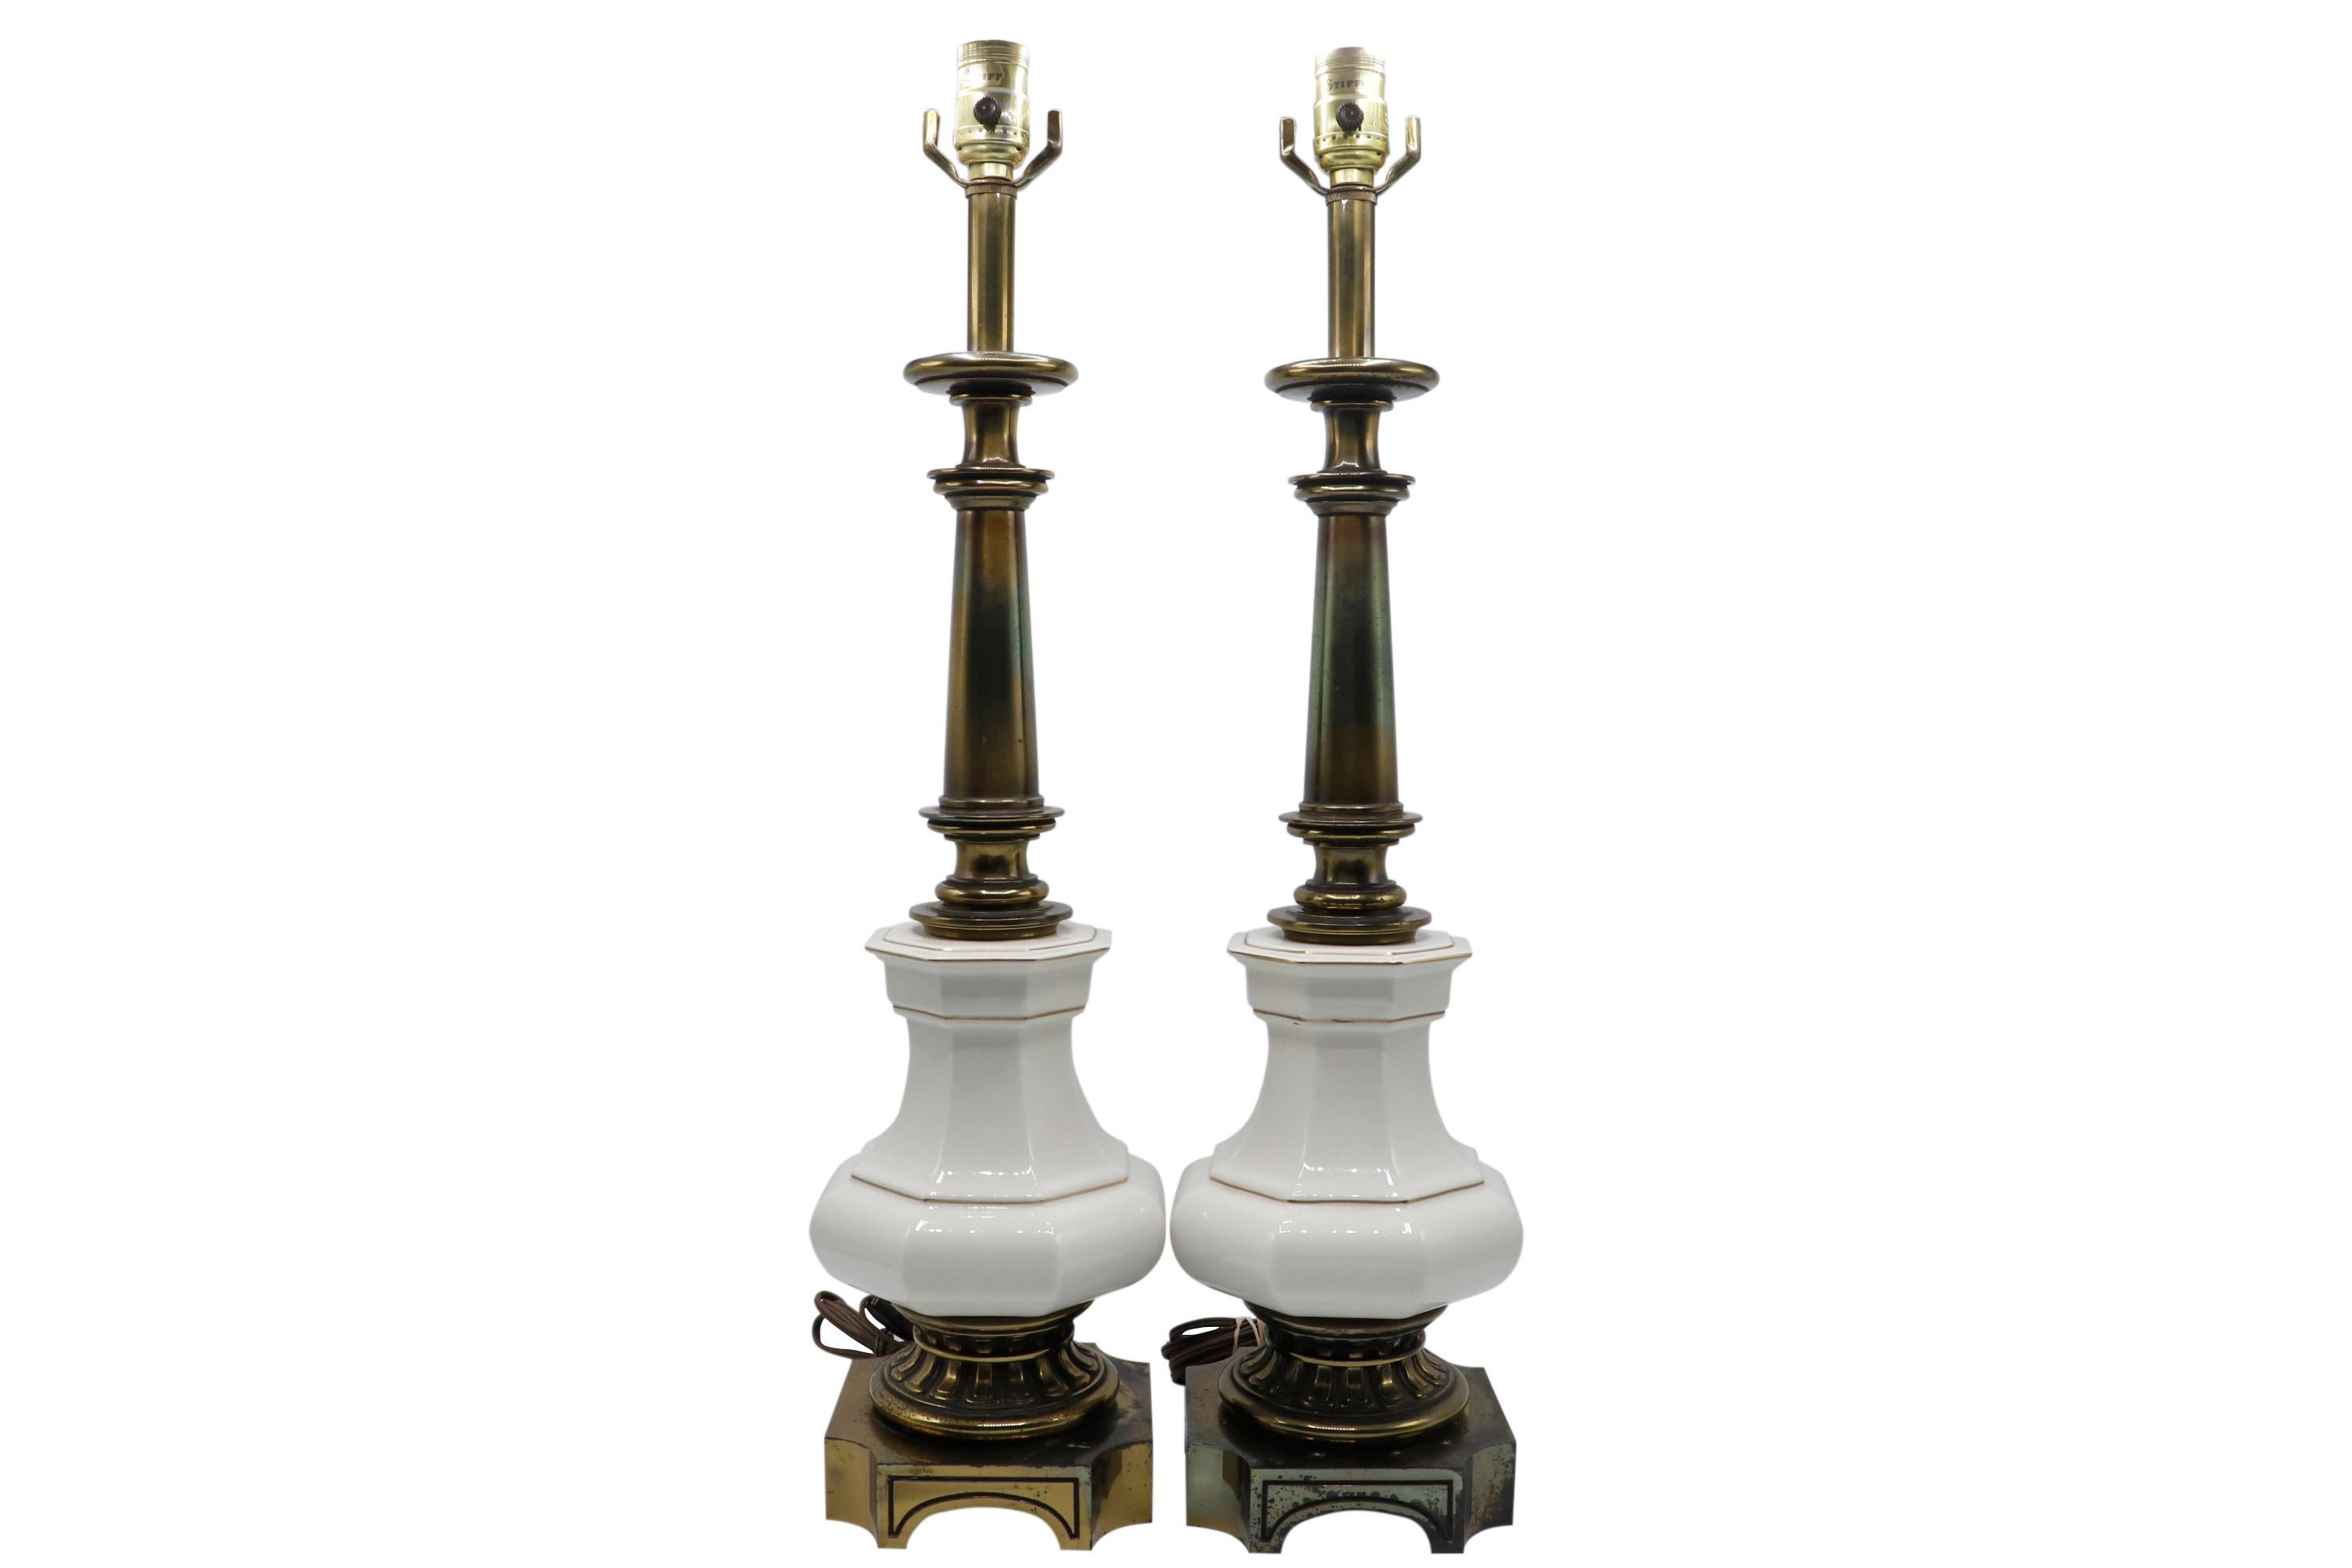 Une paire de lampes de table de style Empire français fabriquées par Stiffel. Des colonnes en laiton sont tournées avec de grandes polices de caractères en céramique de couleur blanche bordées d'or. Les bases sont décorées de denticules sur une base